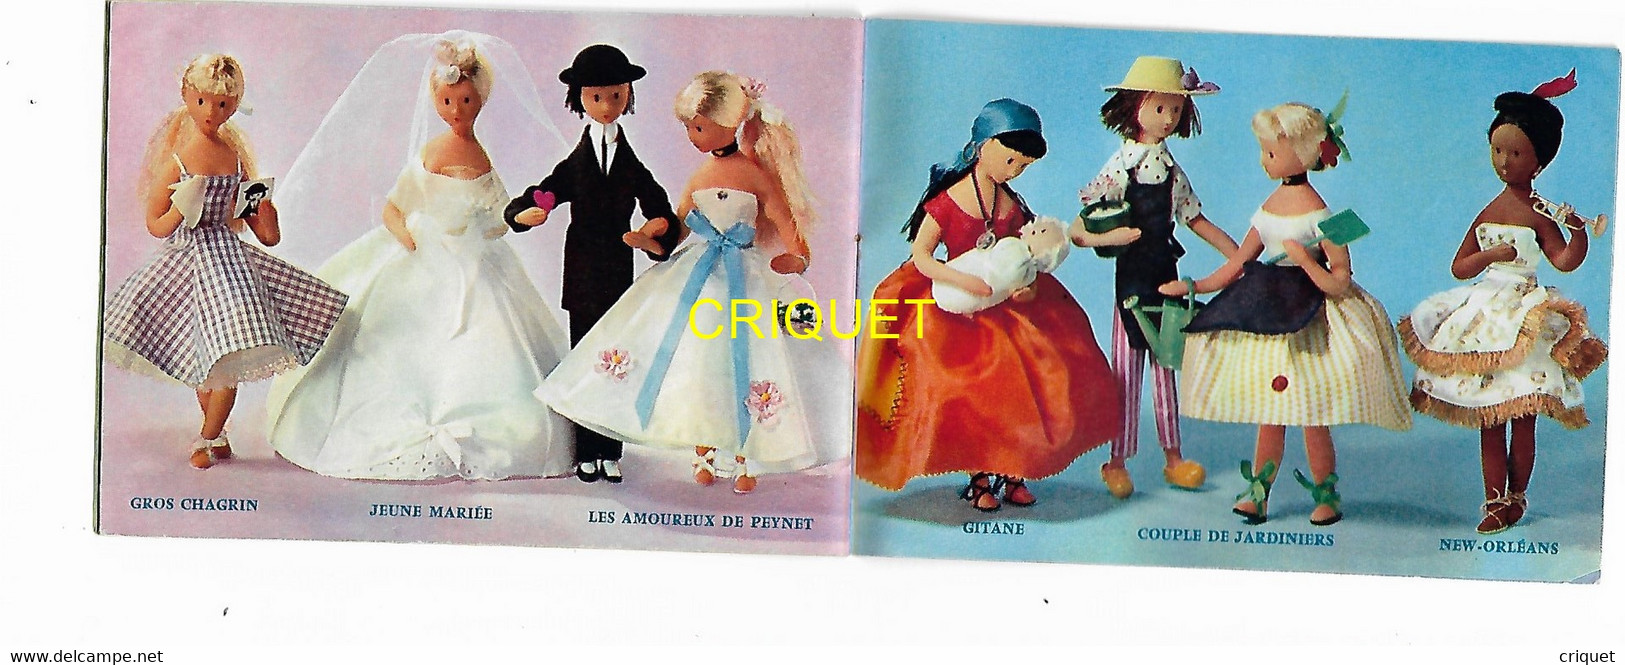 Illustrateur Peynet, catalogue des poupées, n° 2 ( vert )